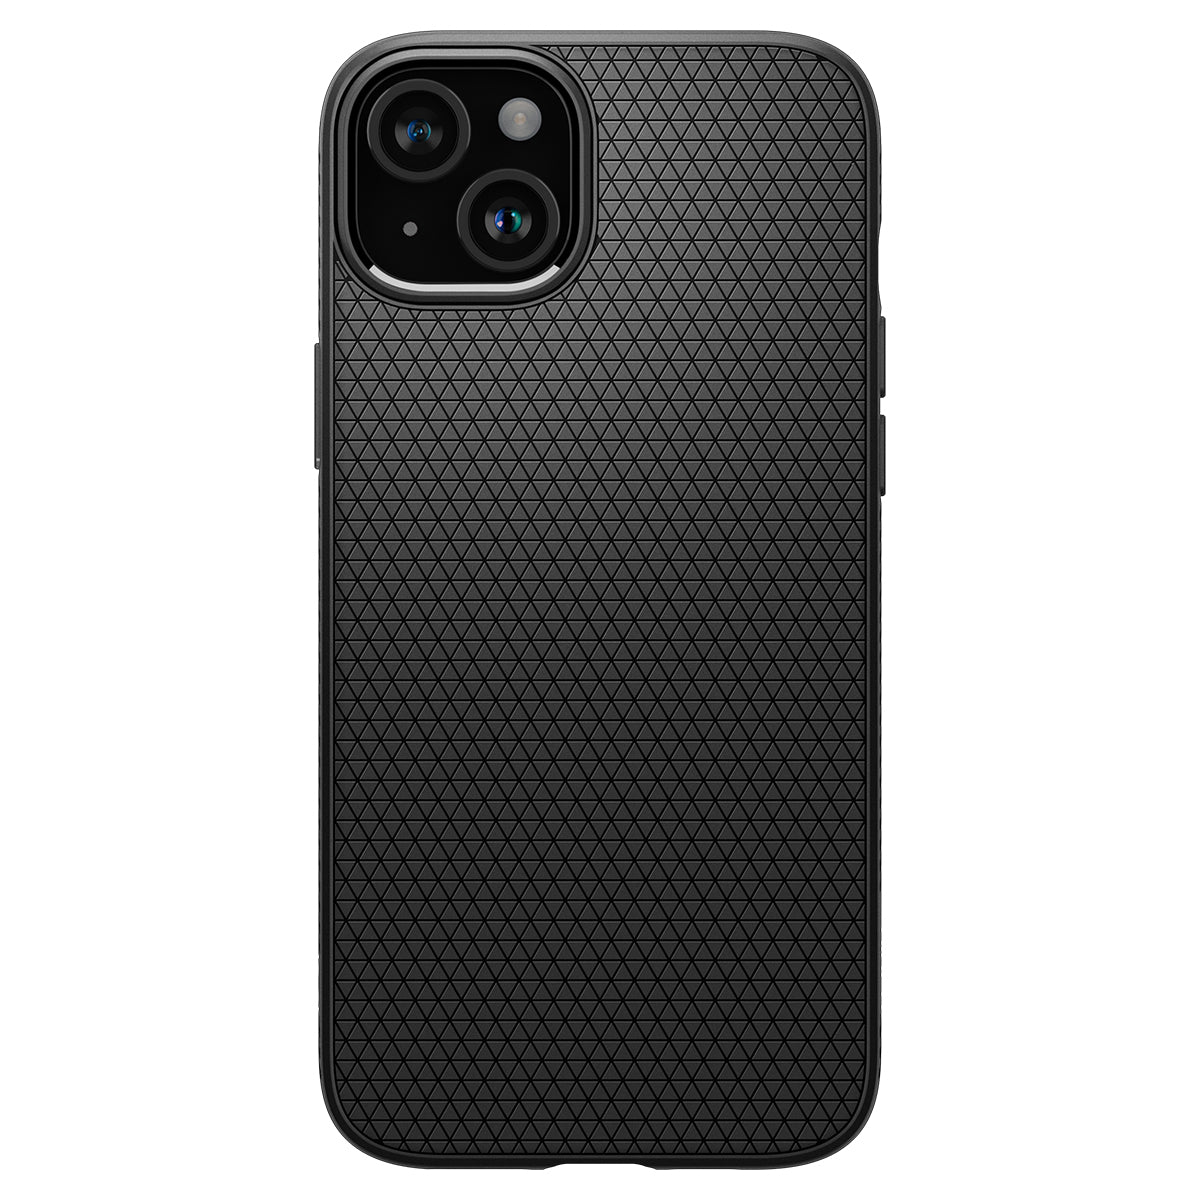 Case Liquid Air iPhone 15 Plus Black